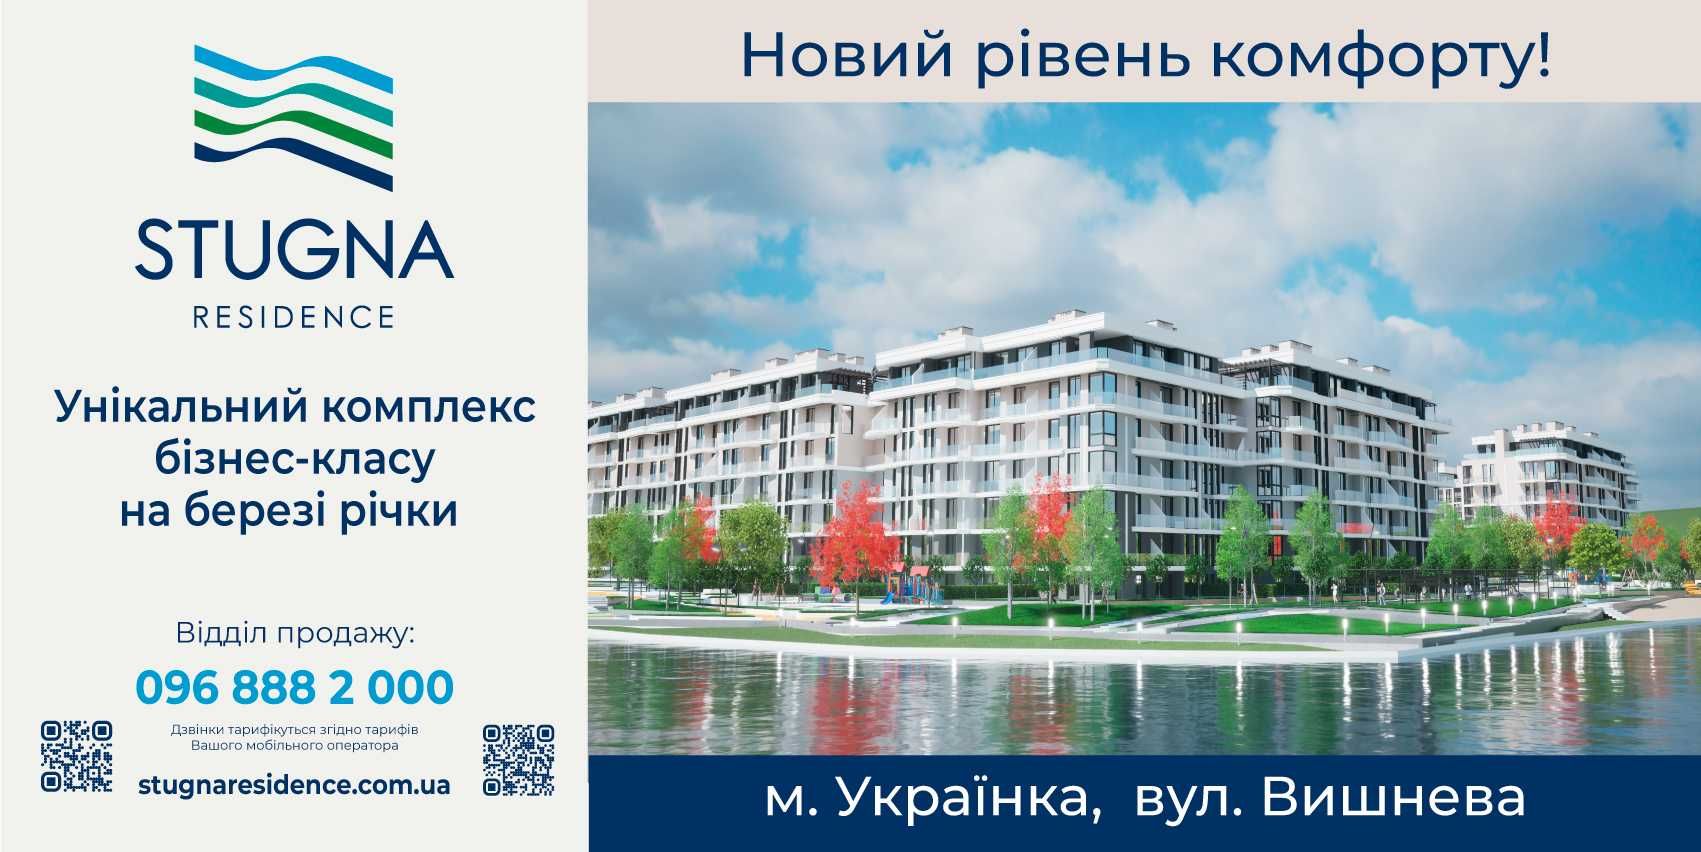 Продаж однокімнатної квартири в м. Українка на березі річки